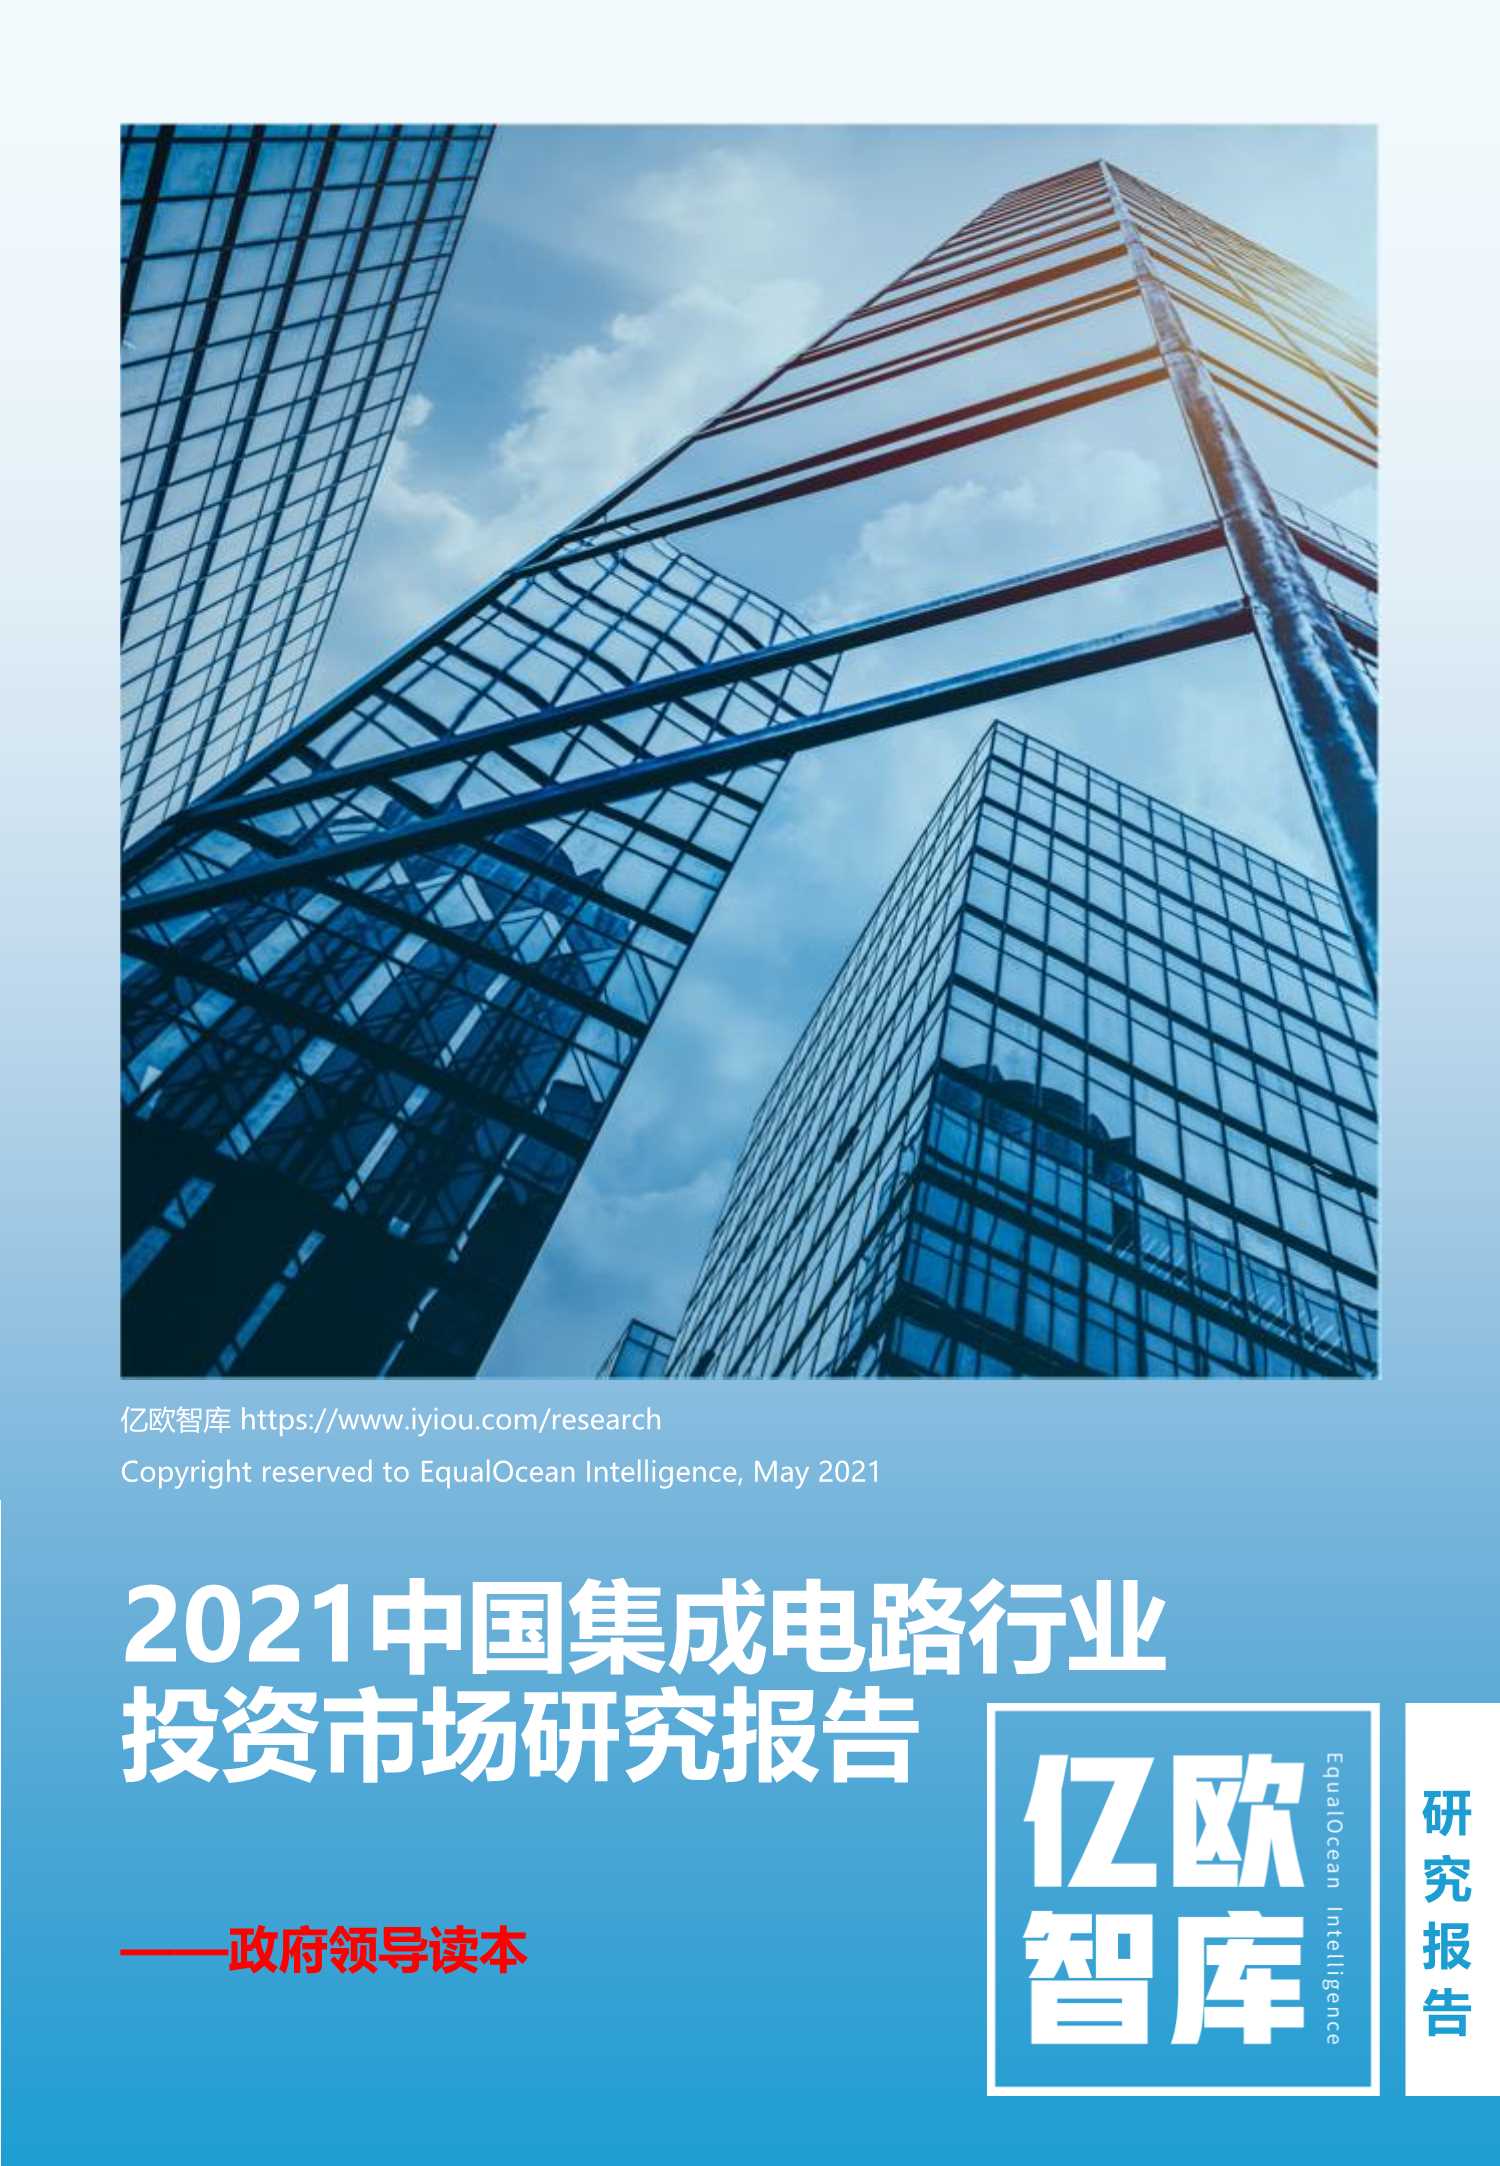 亿欧-2021中国集成电路行业投资市场研究报告-2021.05-75页